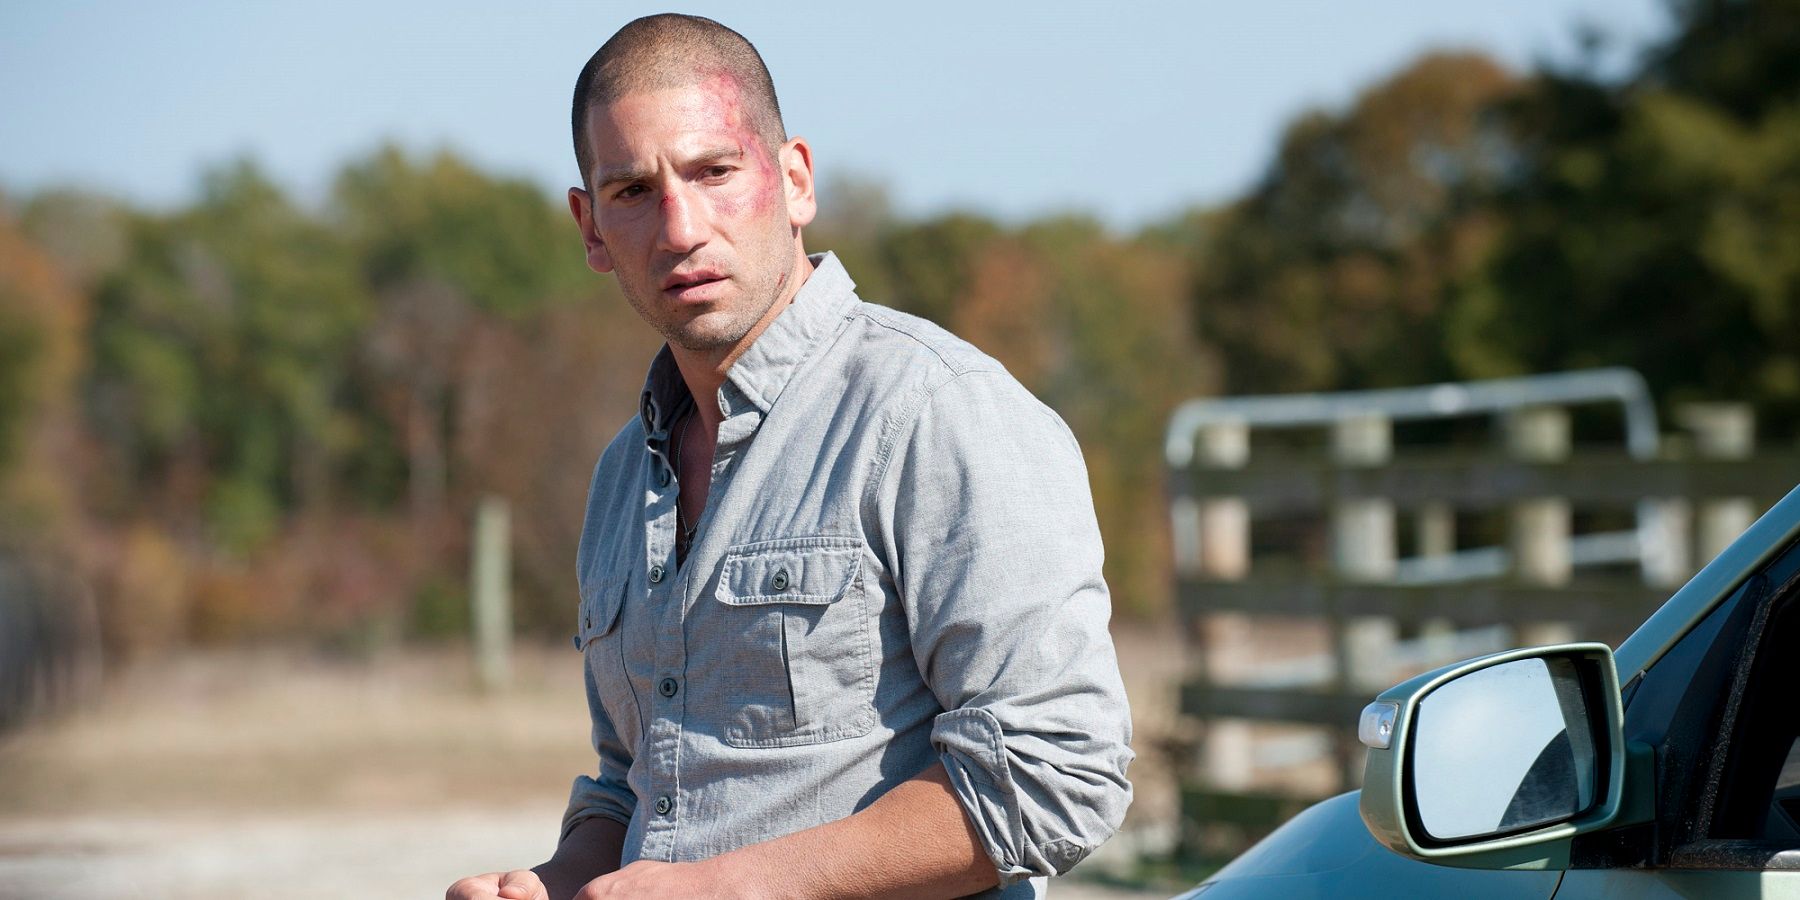 Shane in The Walking Dead